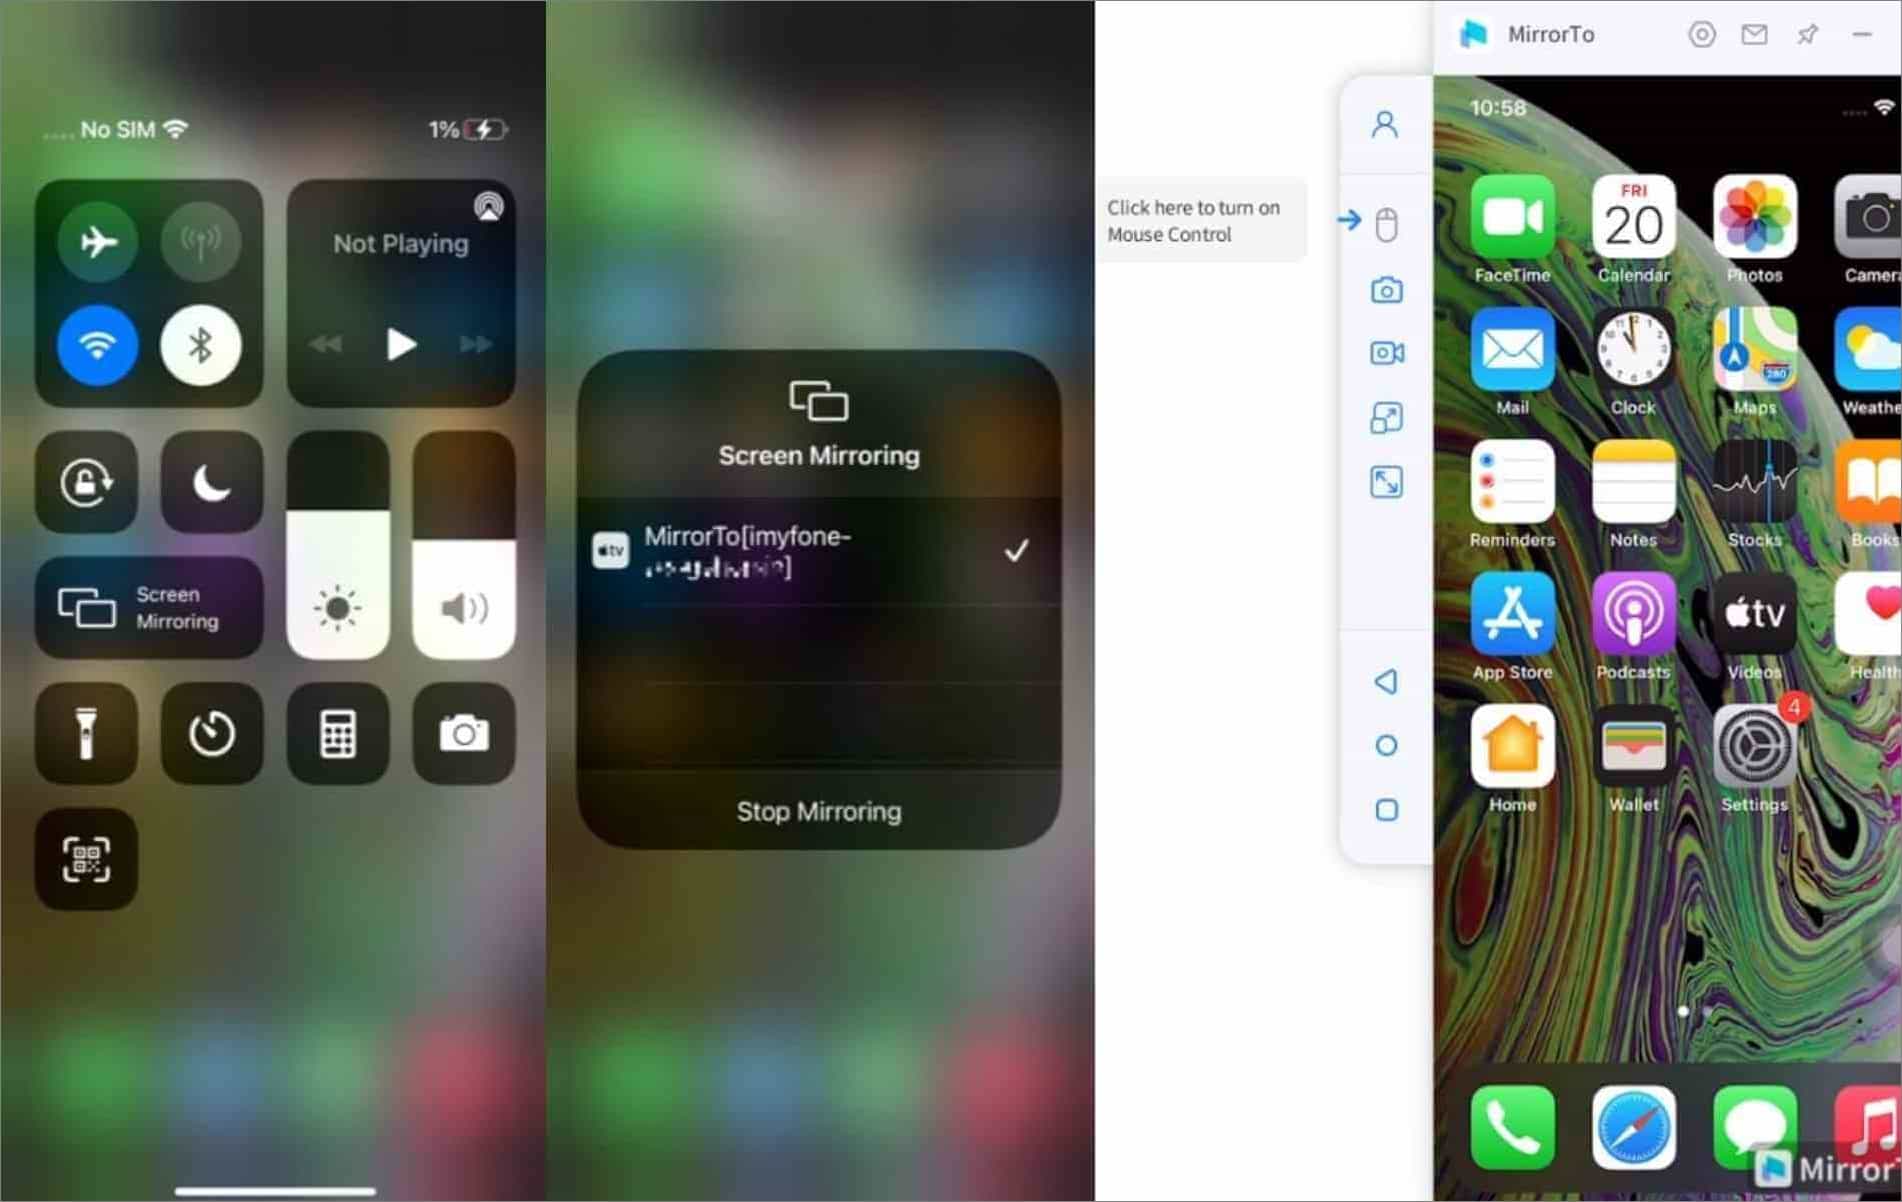 el dispositivo iOS estÃ¡ conectado a MirrorTo